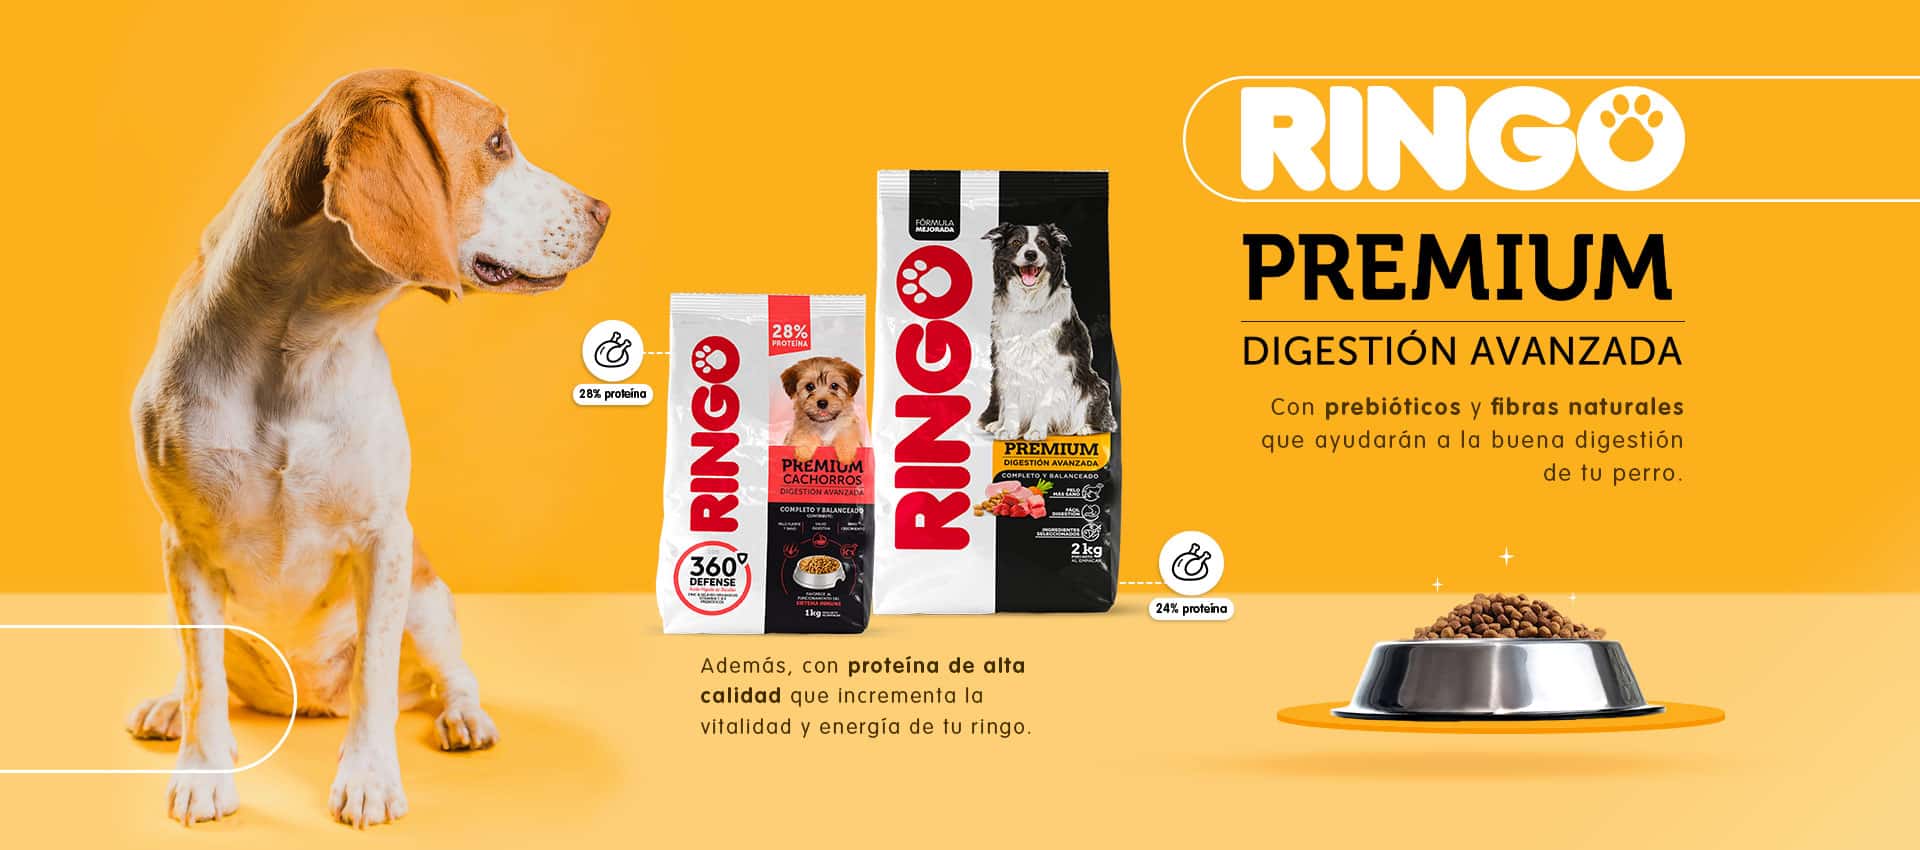 Ringo Premium